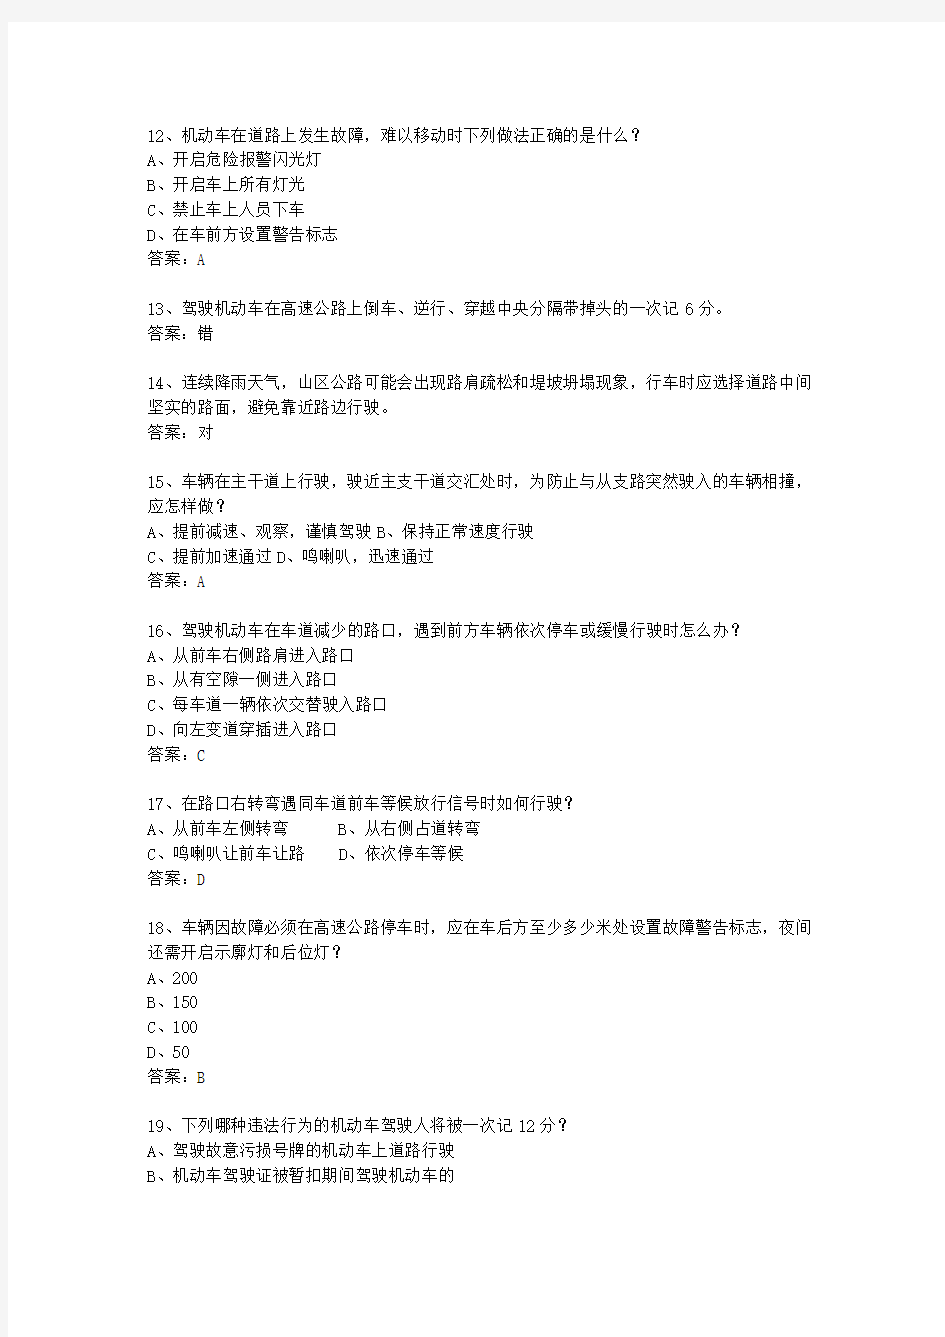 2015江西省驾校考试科目一手动挡(必备资料)